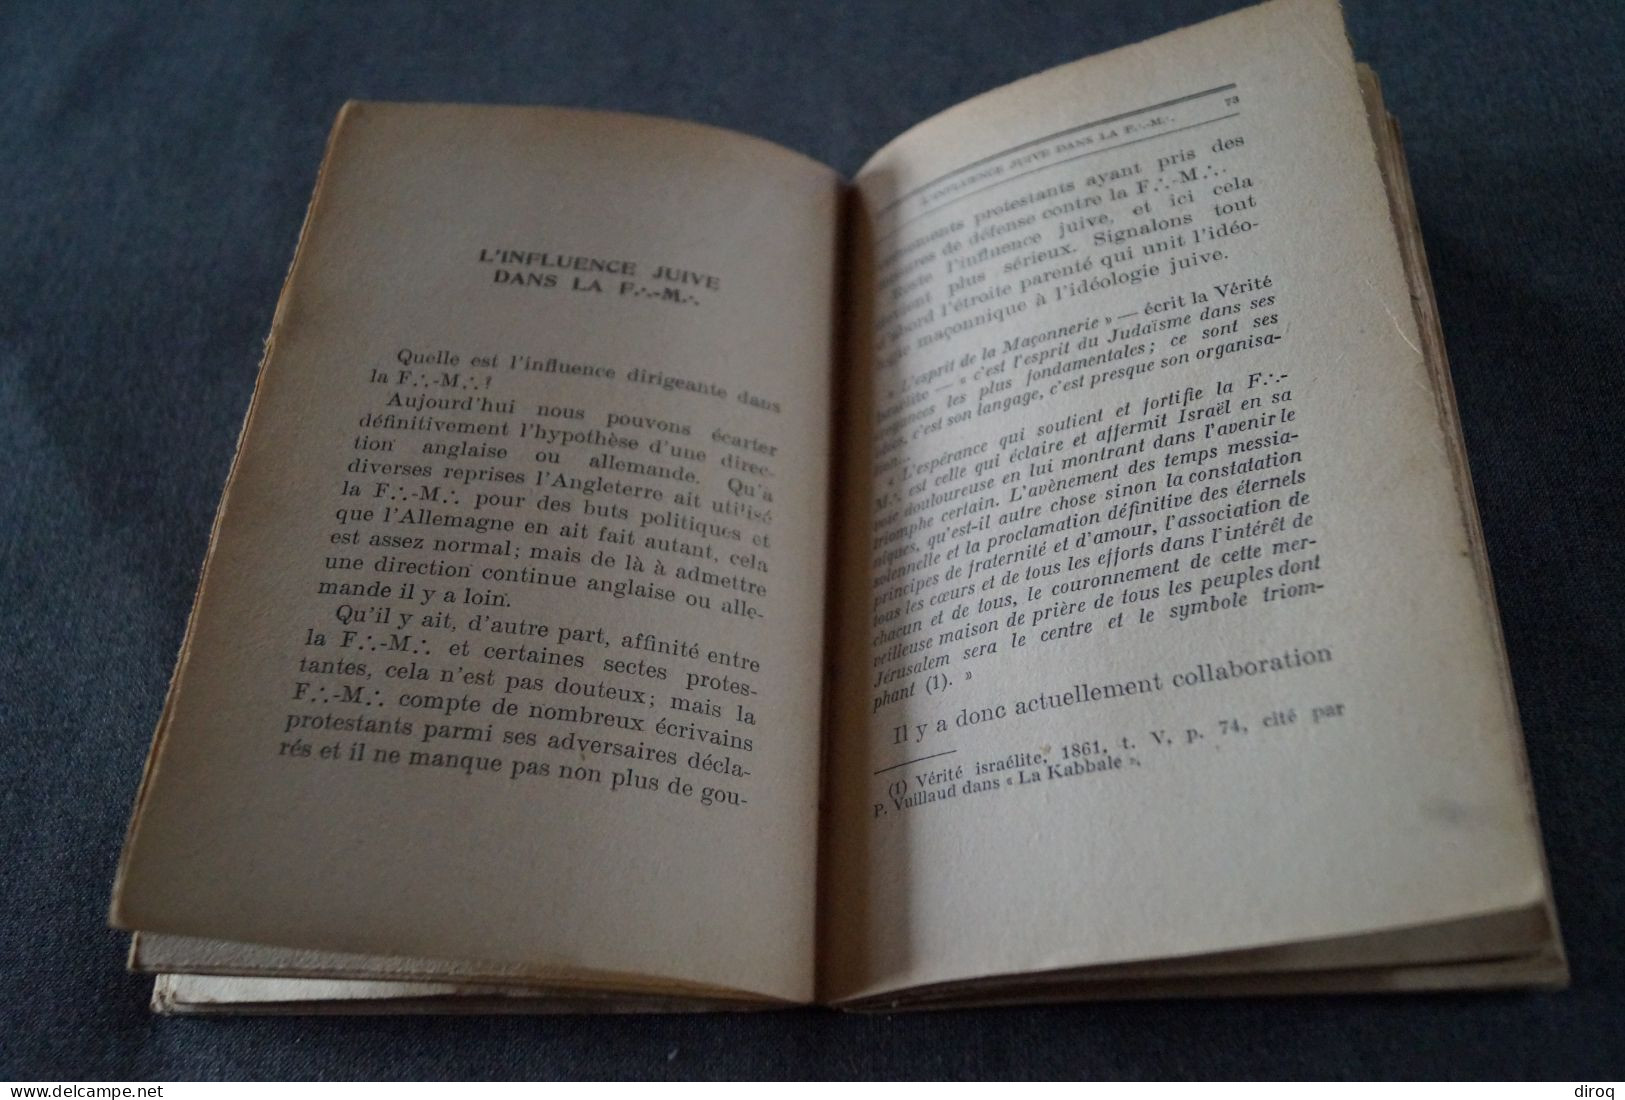 RARE ouvrage de Franc-Maçonnerie 1932,Léon Poncin,Puissance Occulte,130 pages,19 Cm./12 Cm.